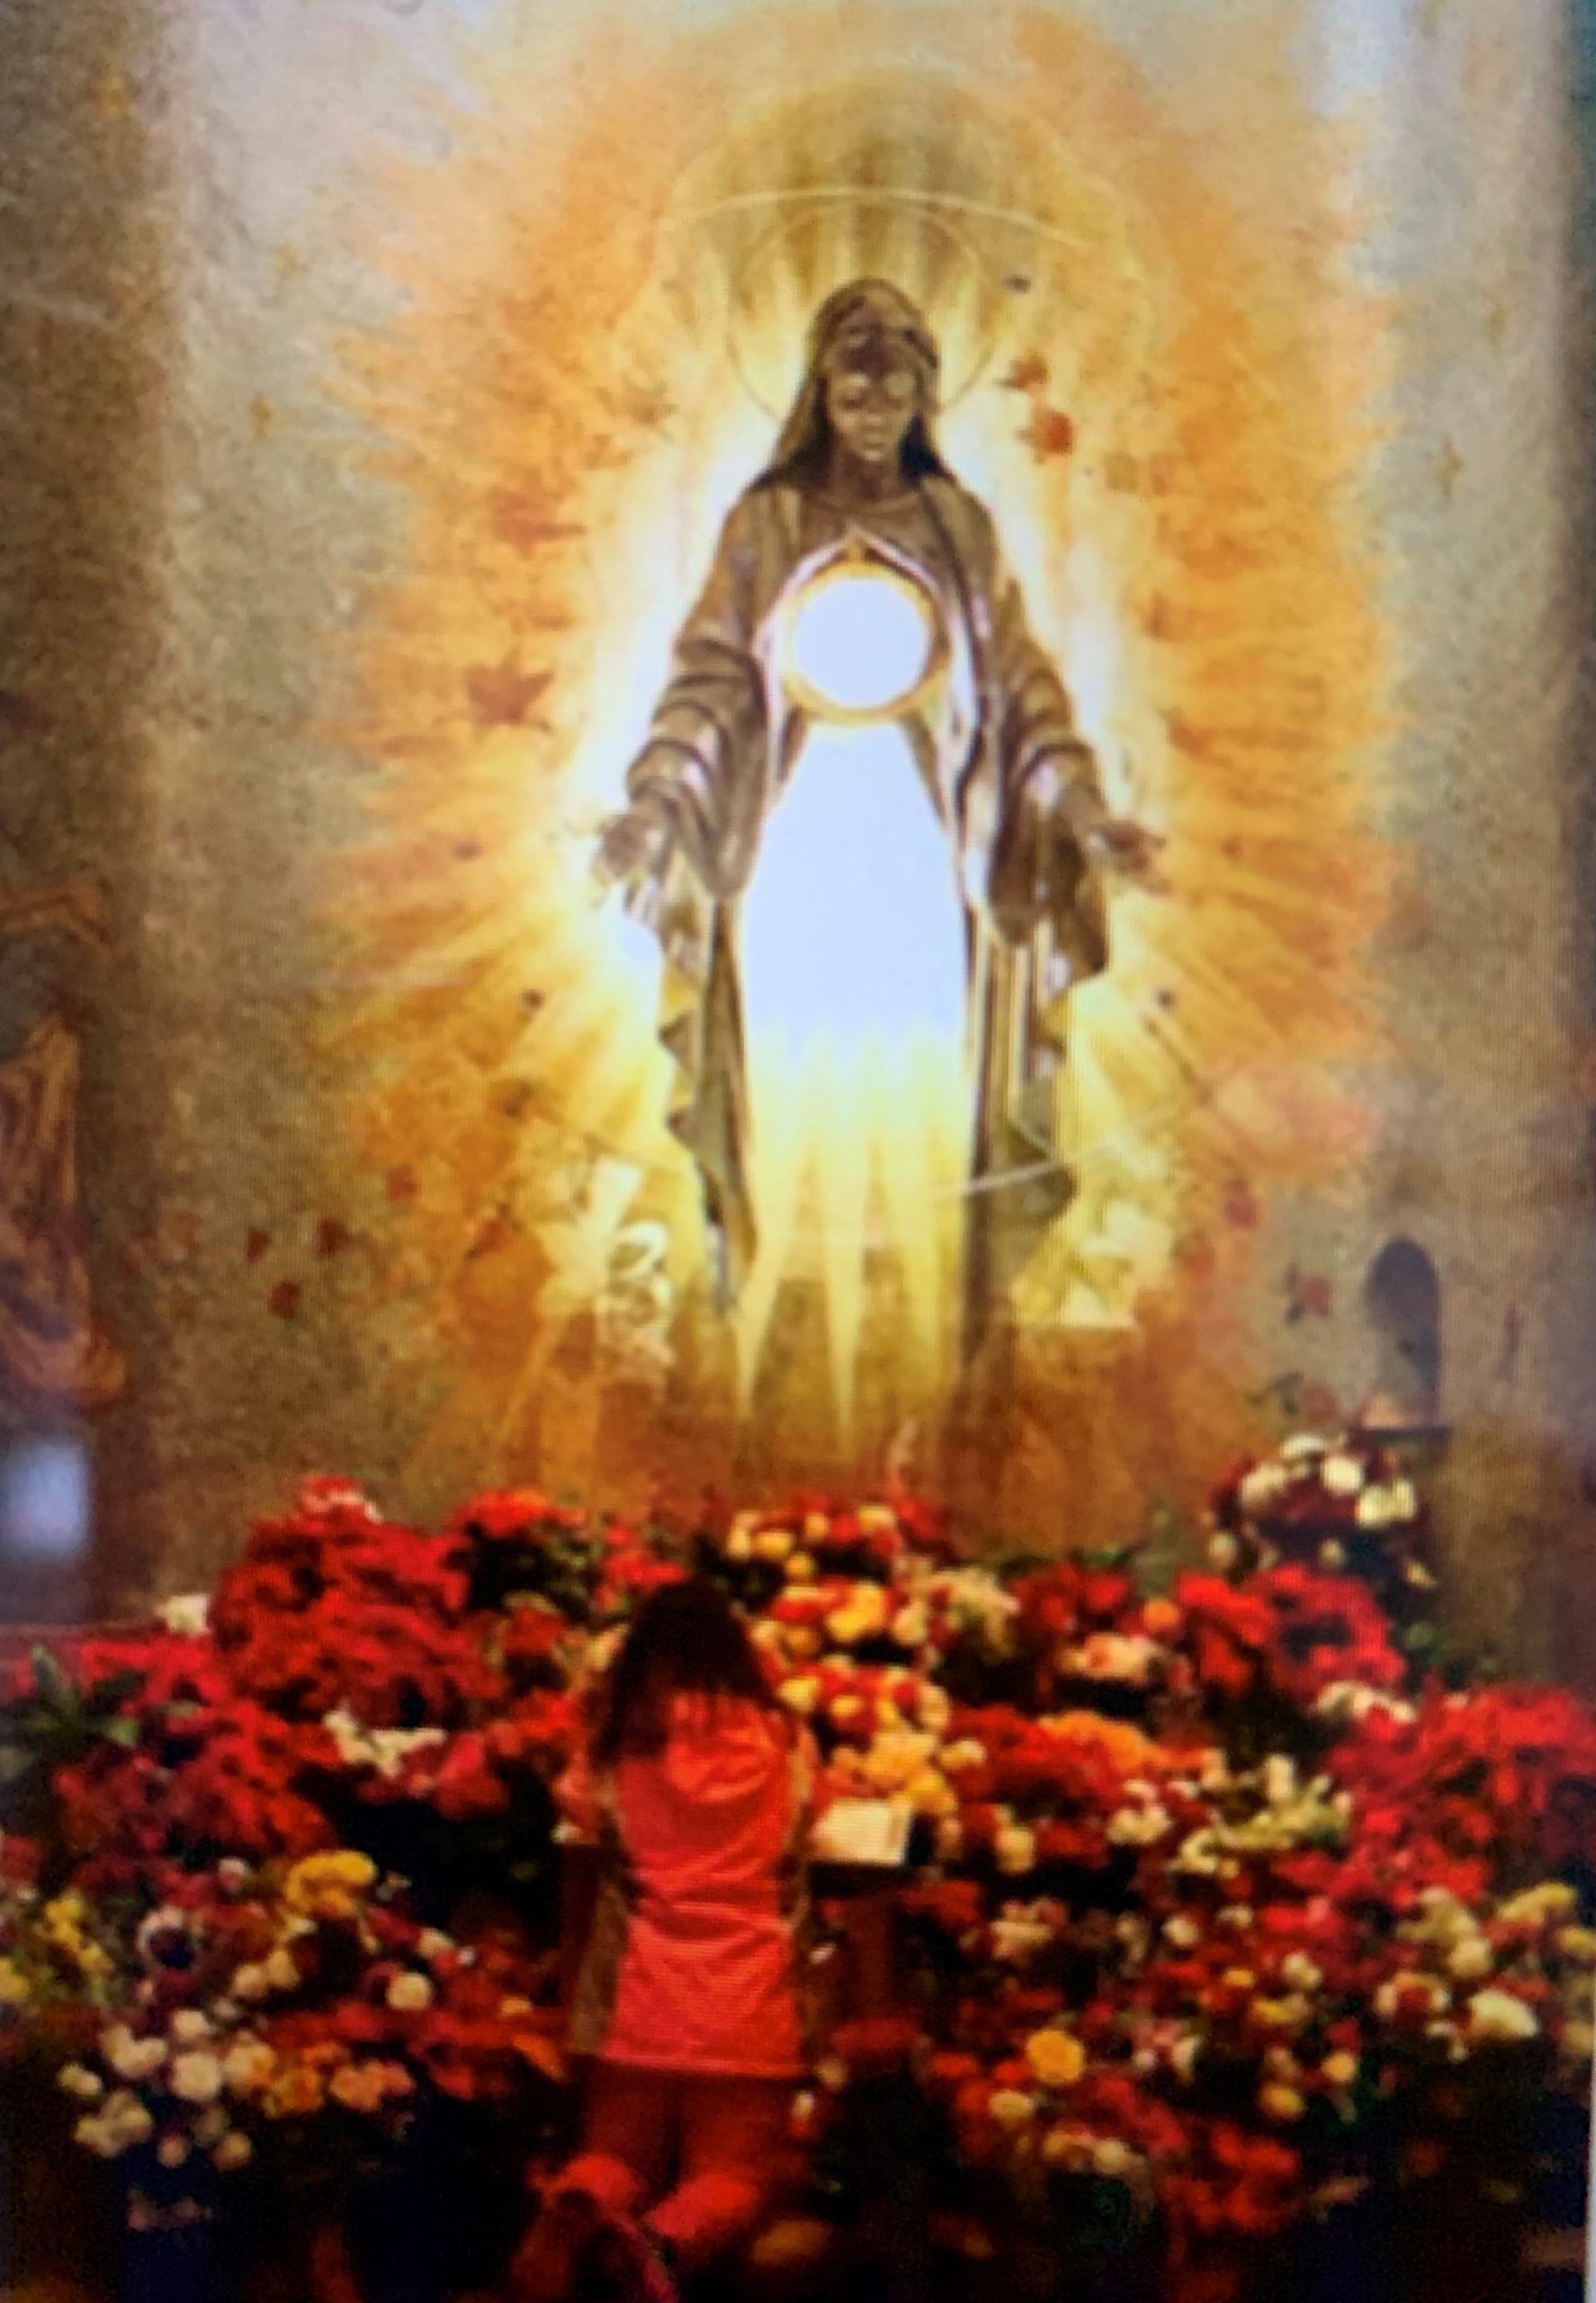 DIOS - Virgen Santísima de Guadalupe, Madre y Reina de... | Facebook